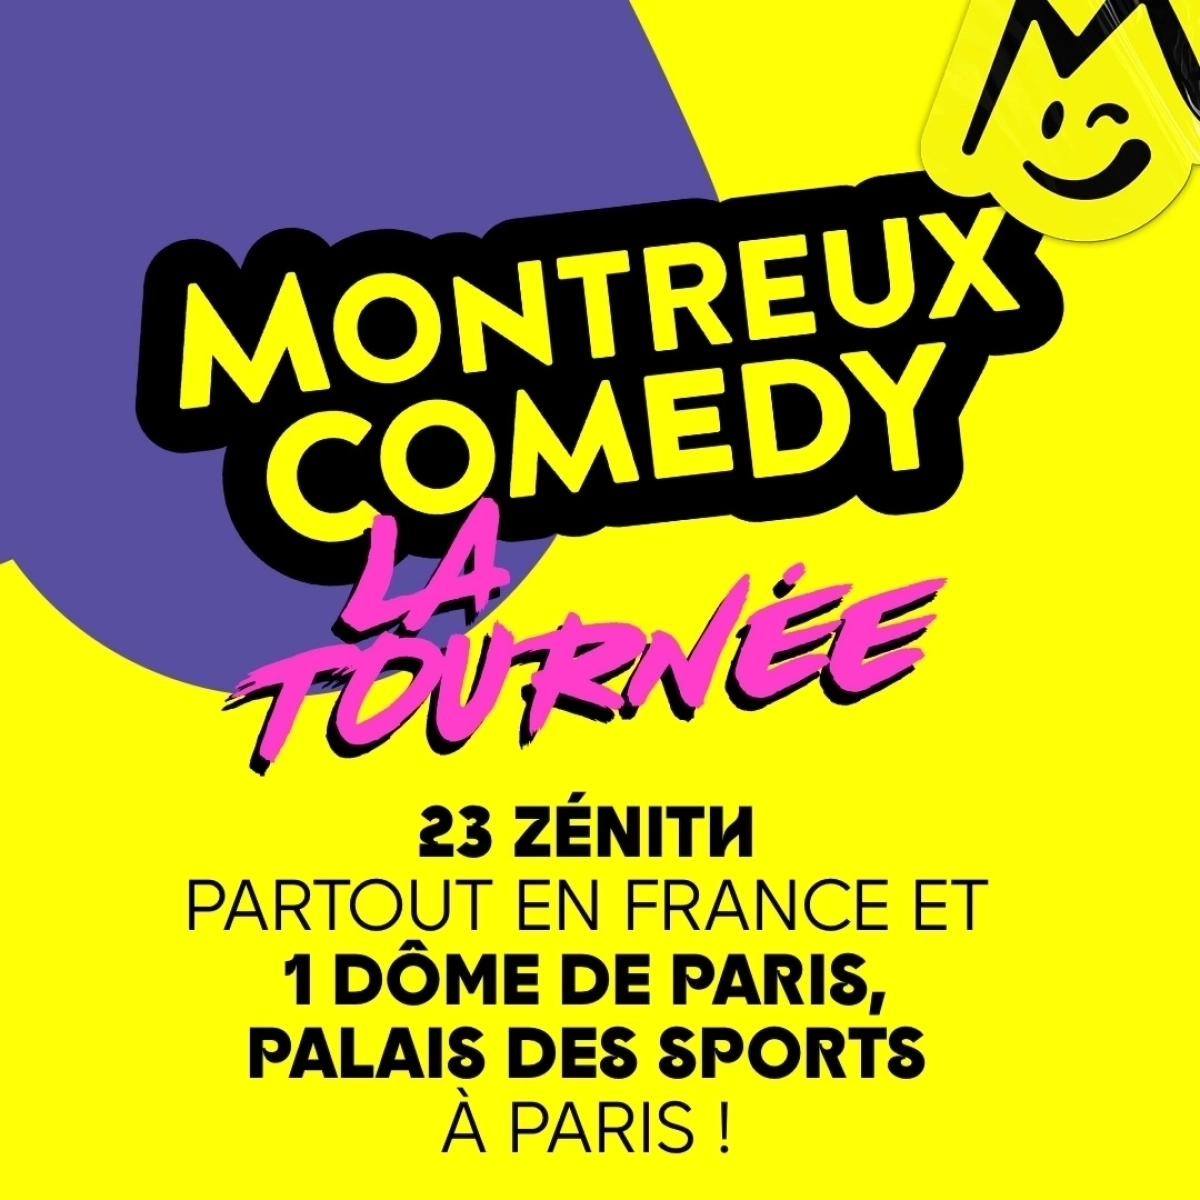 Montreux Comedy - La Tournée at Zenith Rouen Tickets